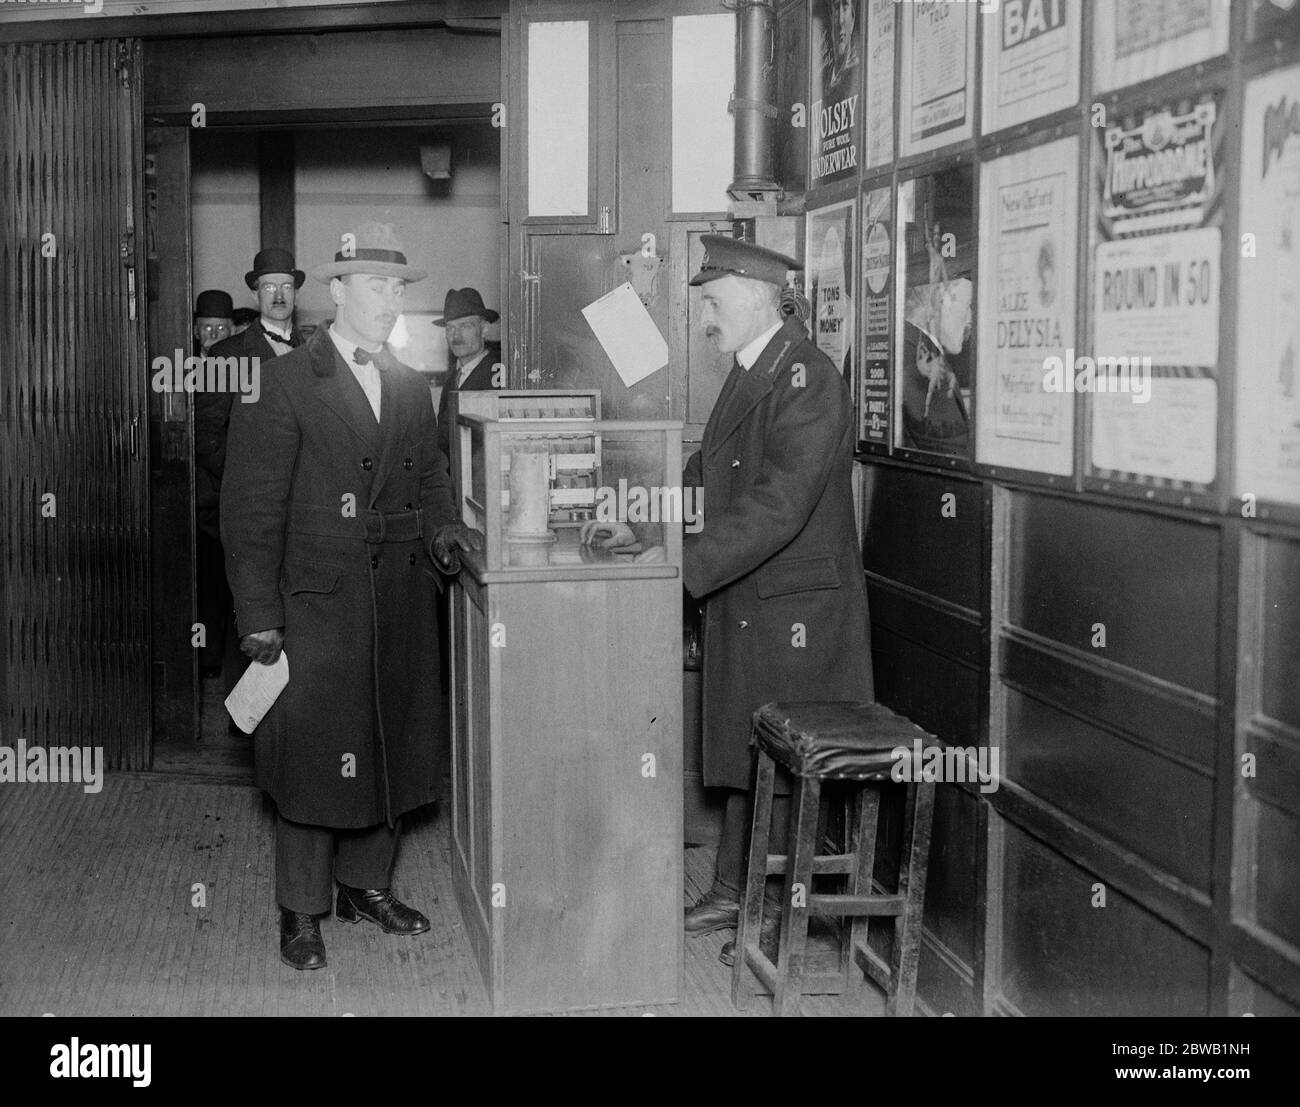 Liftman , le collecteur de billets et le commis de réservation tout en un . Une nouvelle machine à commande électrique a été installée à l'intérieur de l'ascenseur, dans le métro à la station Aldwych . Il permet à l'ascenseur d'émettre et de récupérer des billets et en même temps de contrôler le fonctionnement de son ascenseur . Le monte-charge qui émet un billet depuis la machine . 5 mai 1922 Banque D'Images